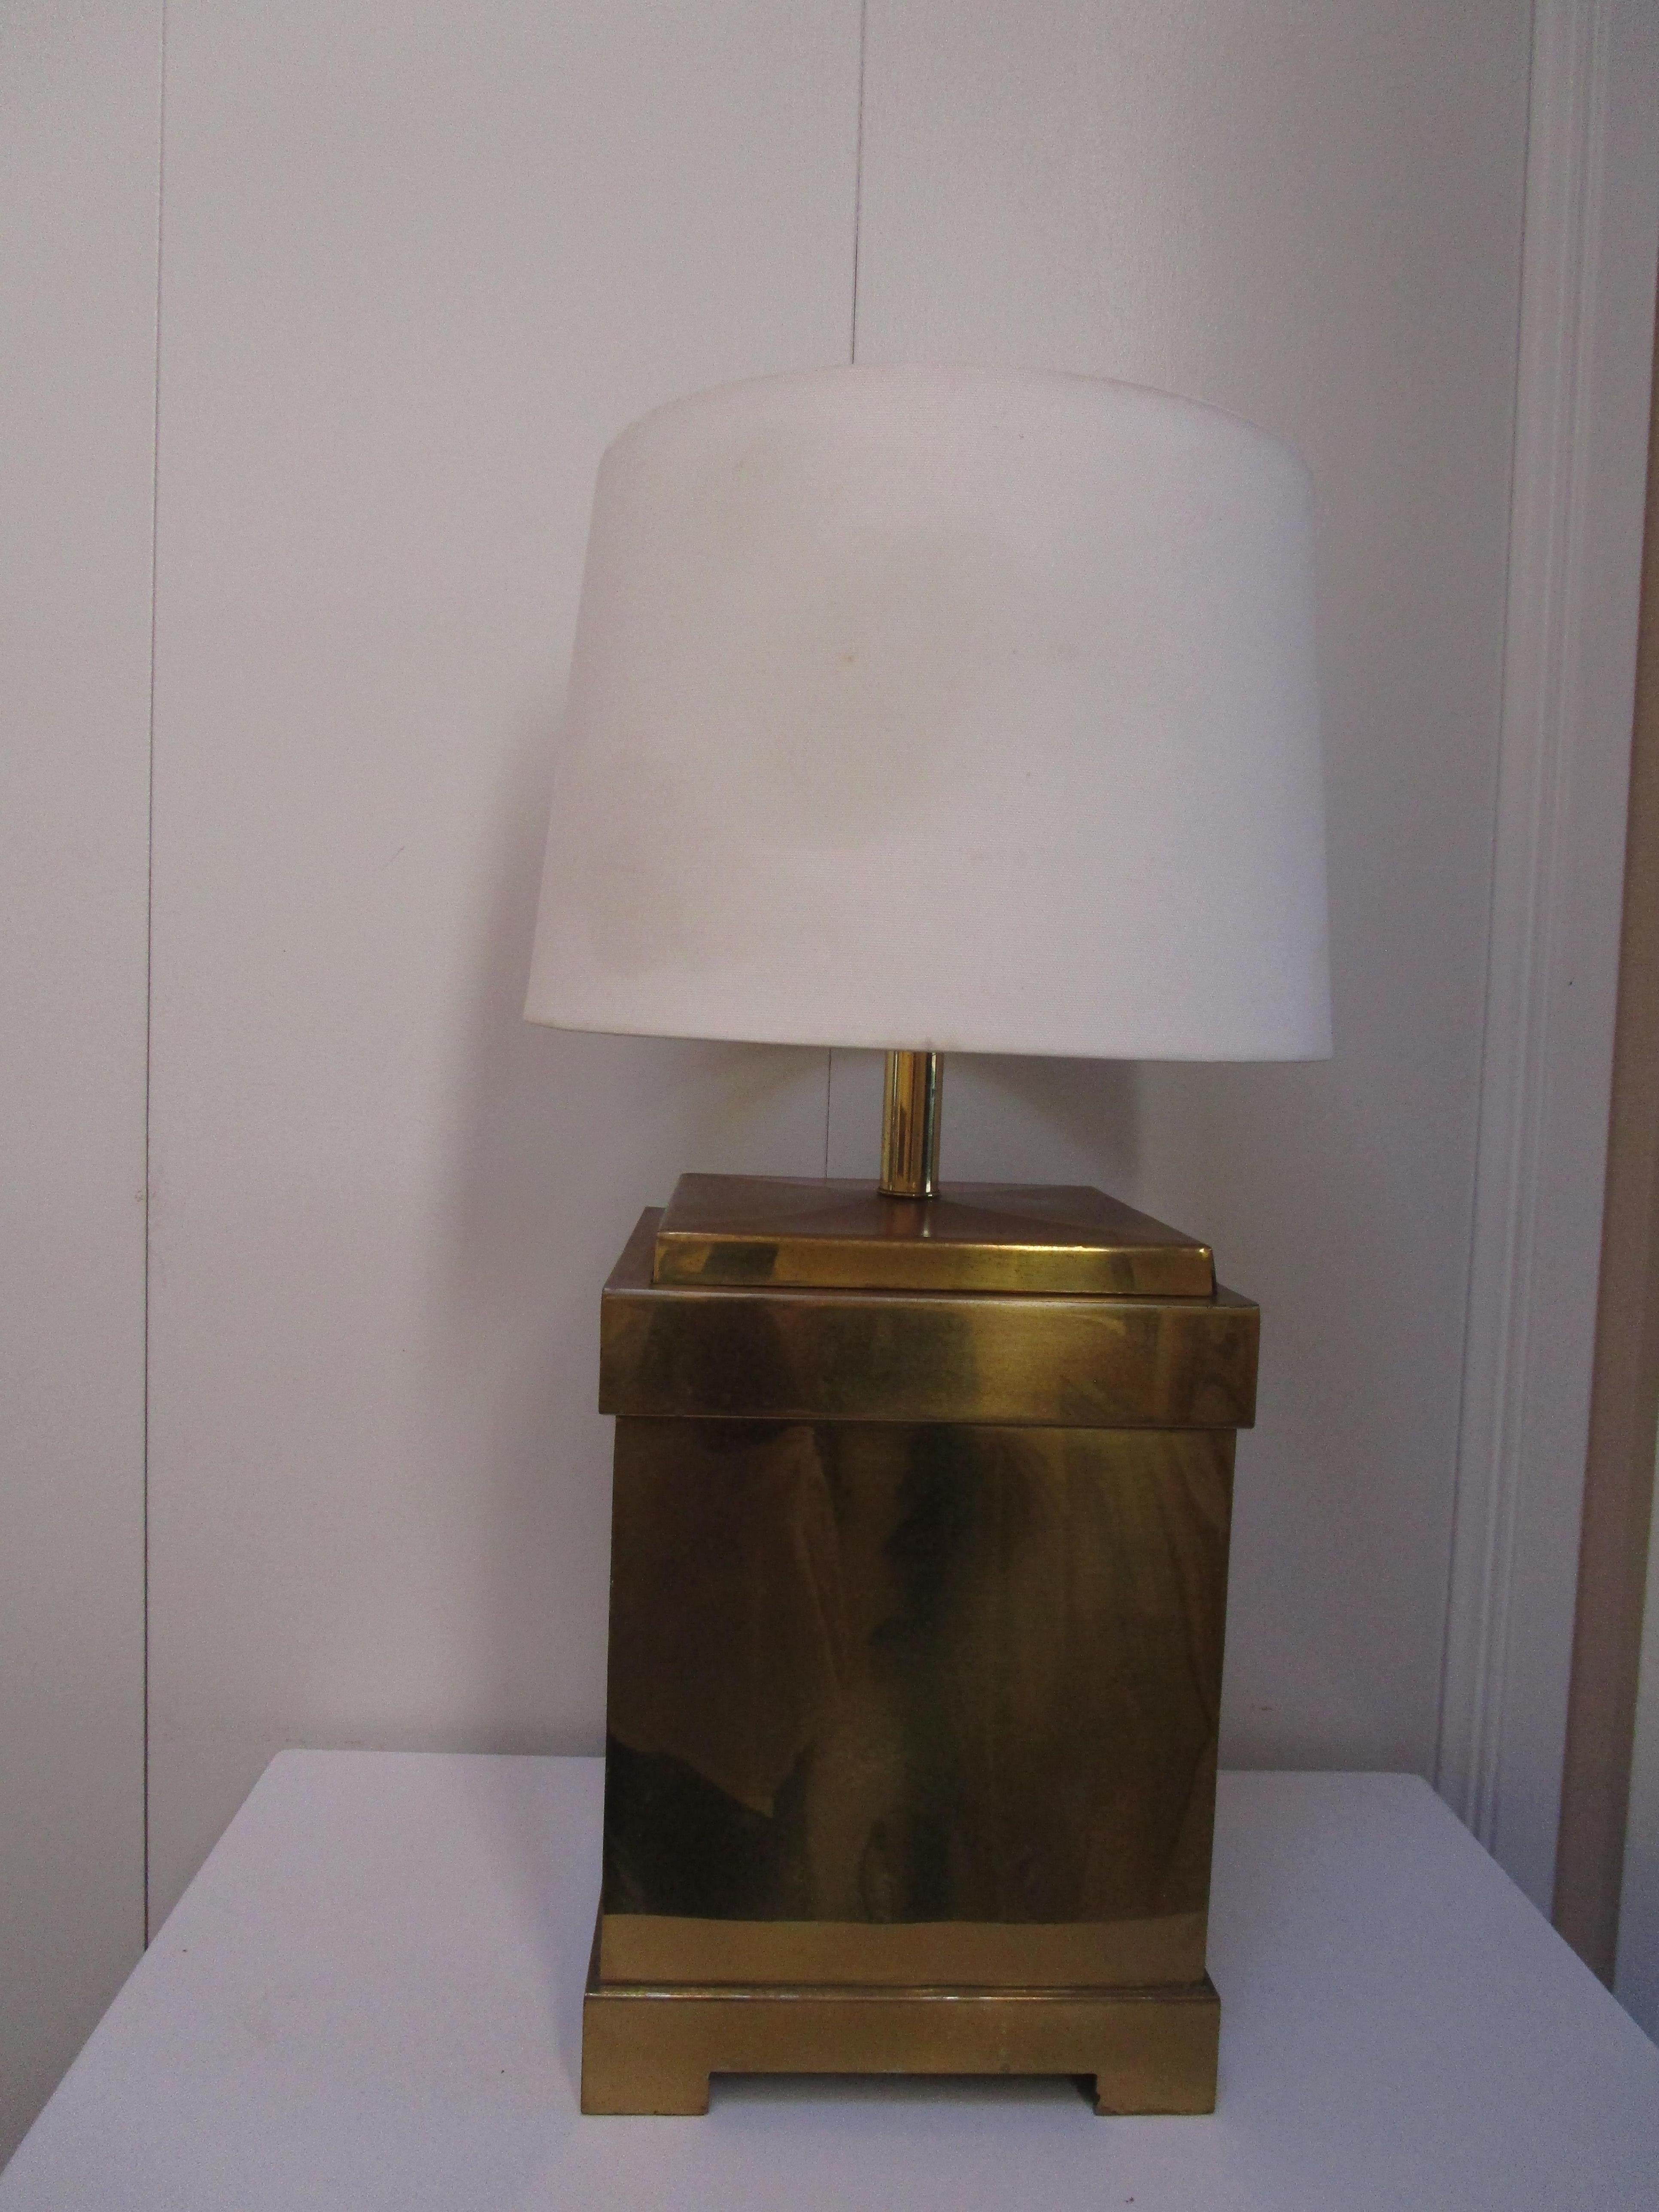 Il s'agit d'une incroyable lampe à l'allure géométrique ou architecturale. Elle porte le label Remington, un fabricant de lampes de la période Hollywood Regency. Mais il porte également un Label indiquant qu'il a été produit à Hong Kong. La lampe